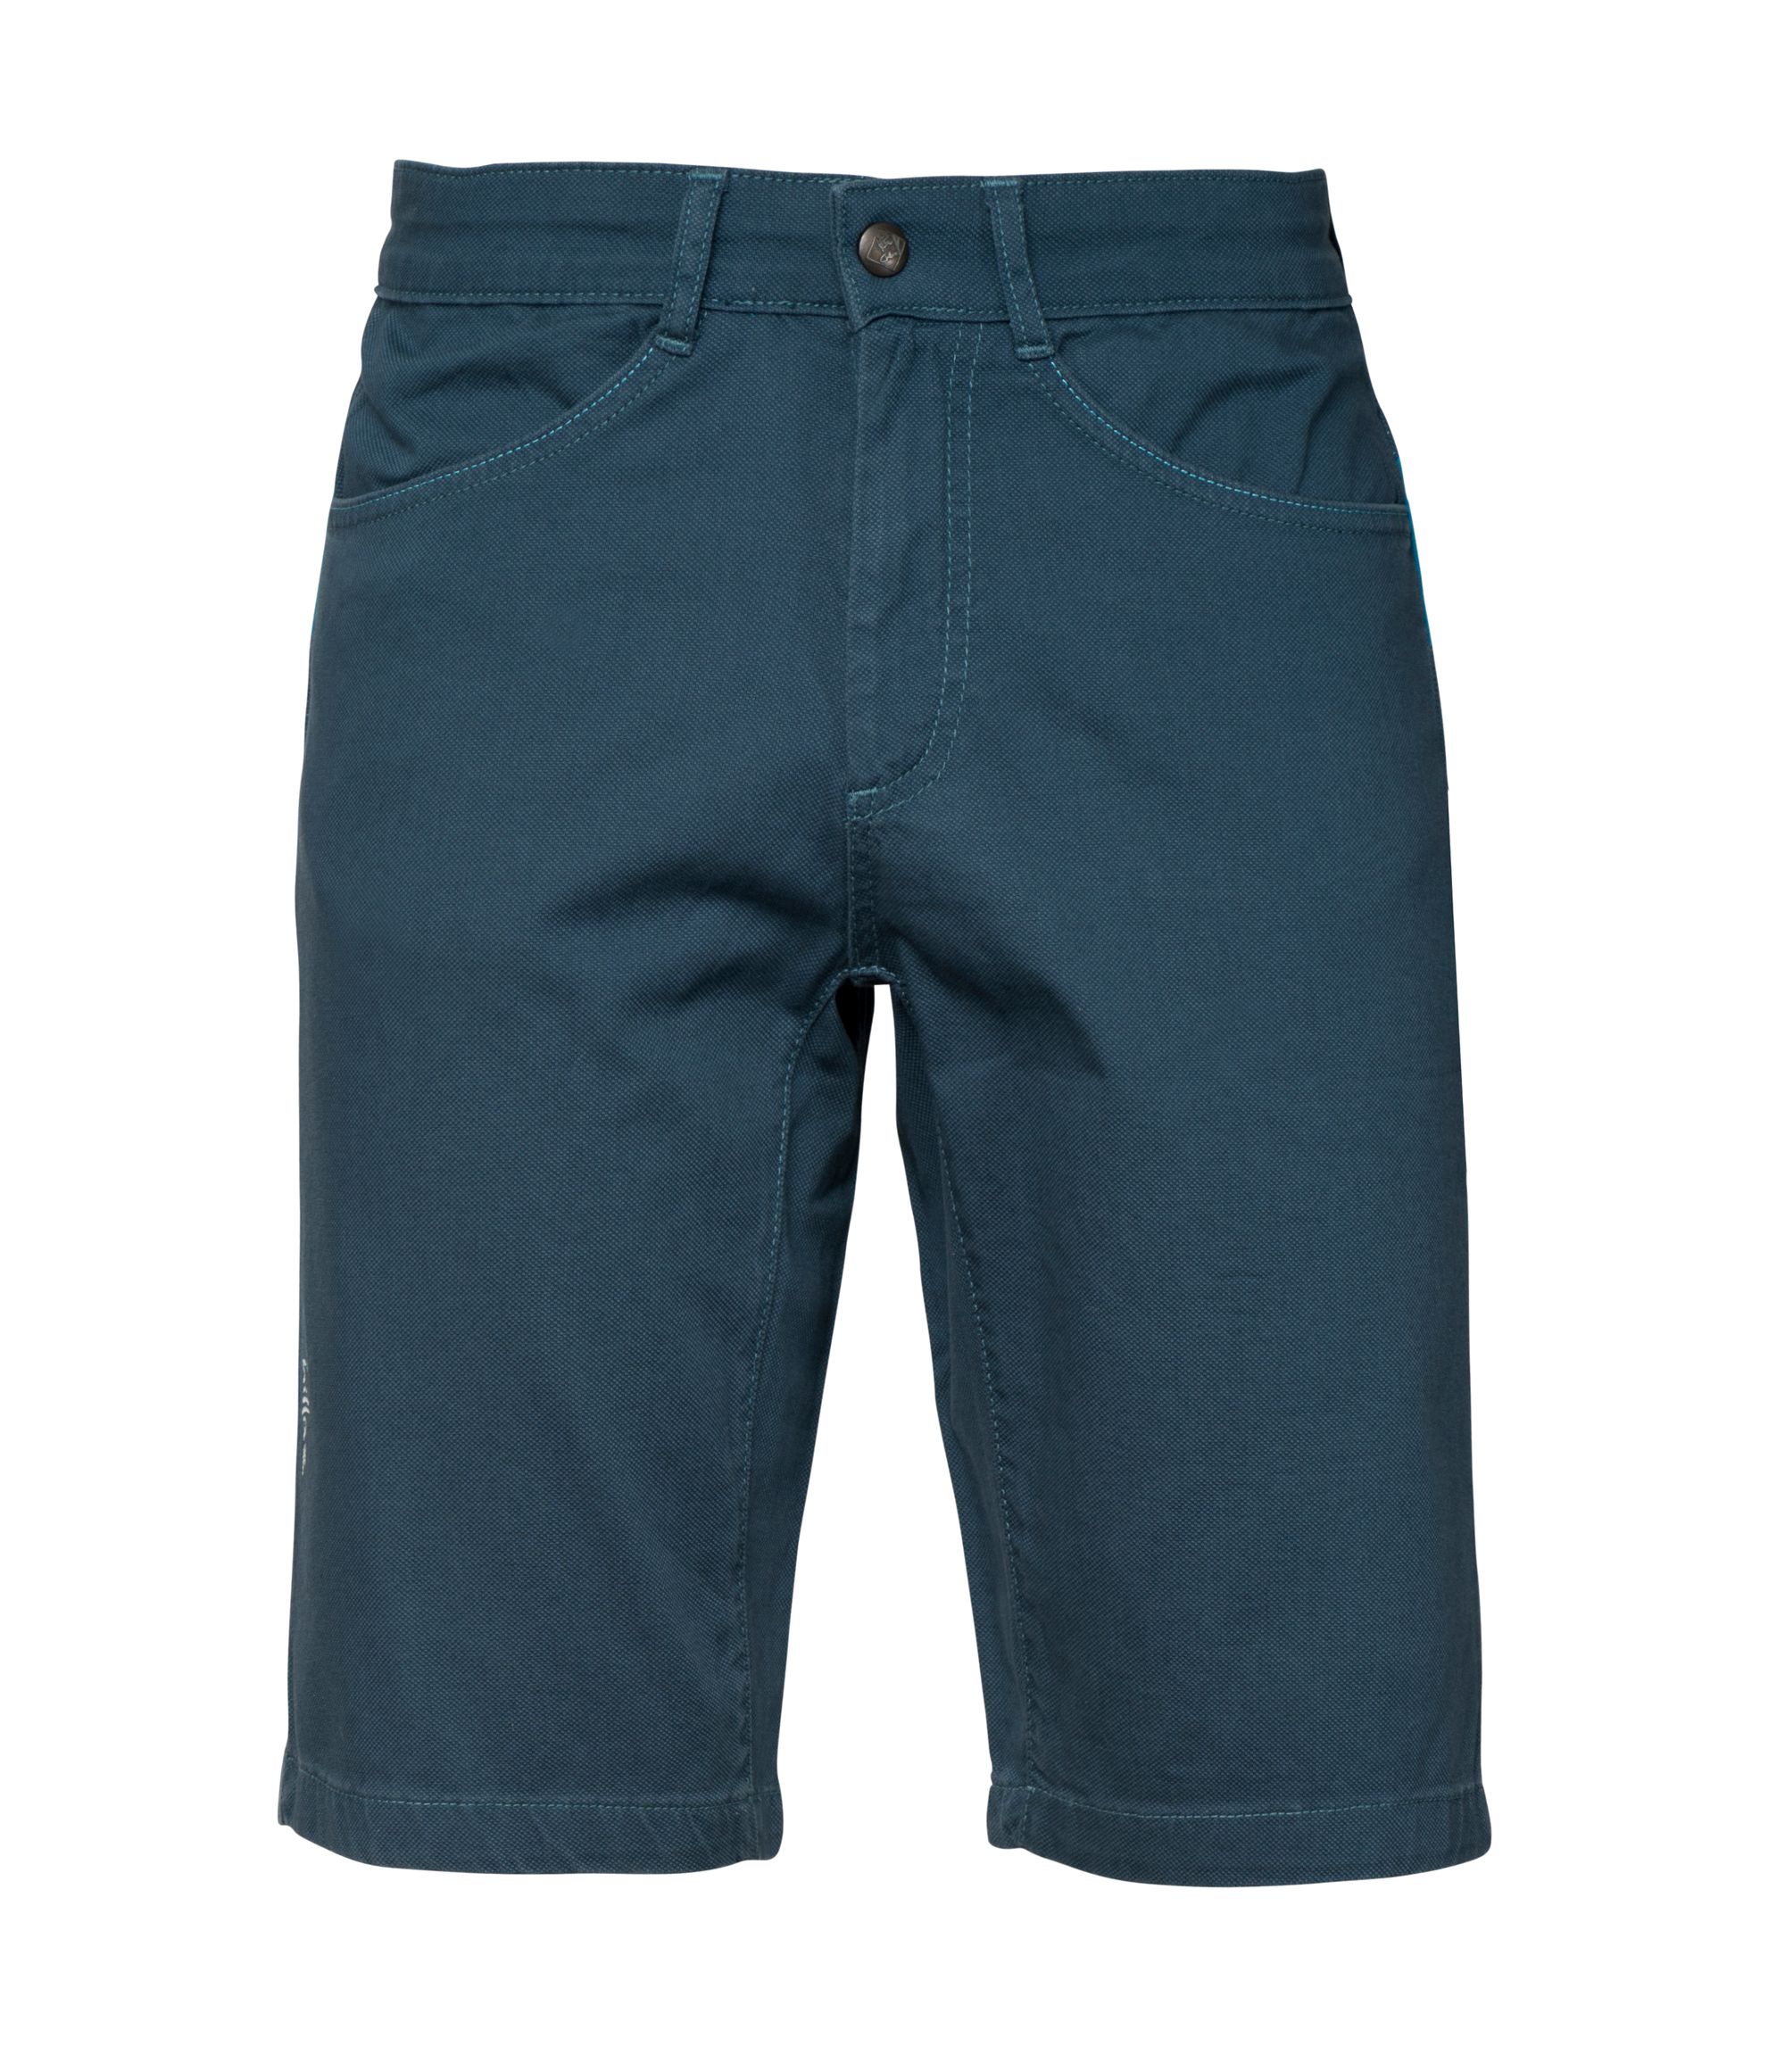 CHILLAZ Elias dark blue shorts varianta: S